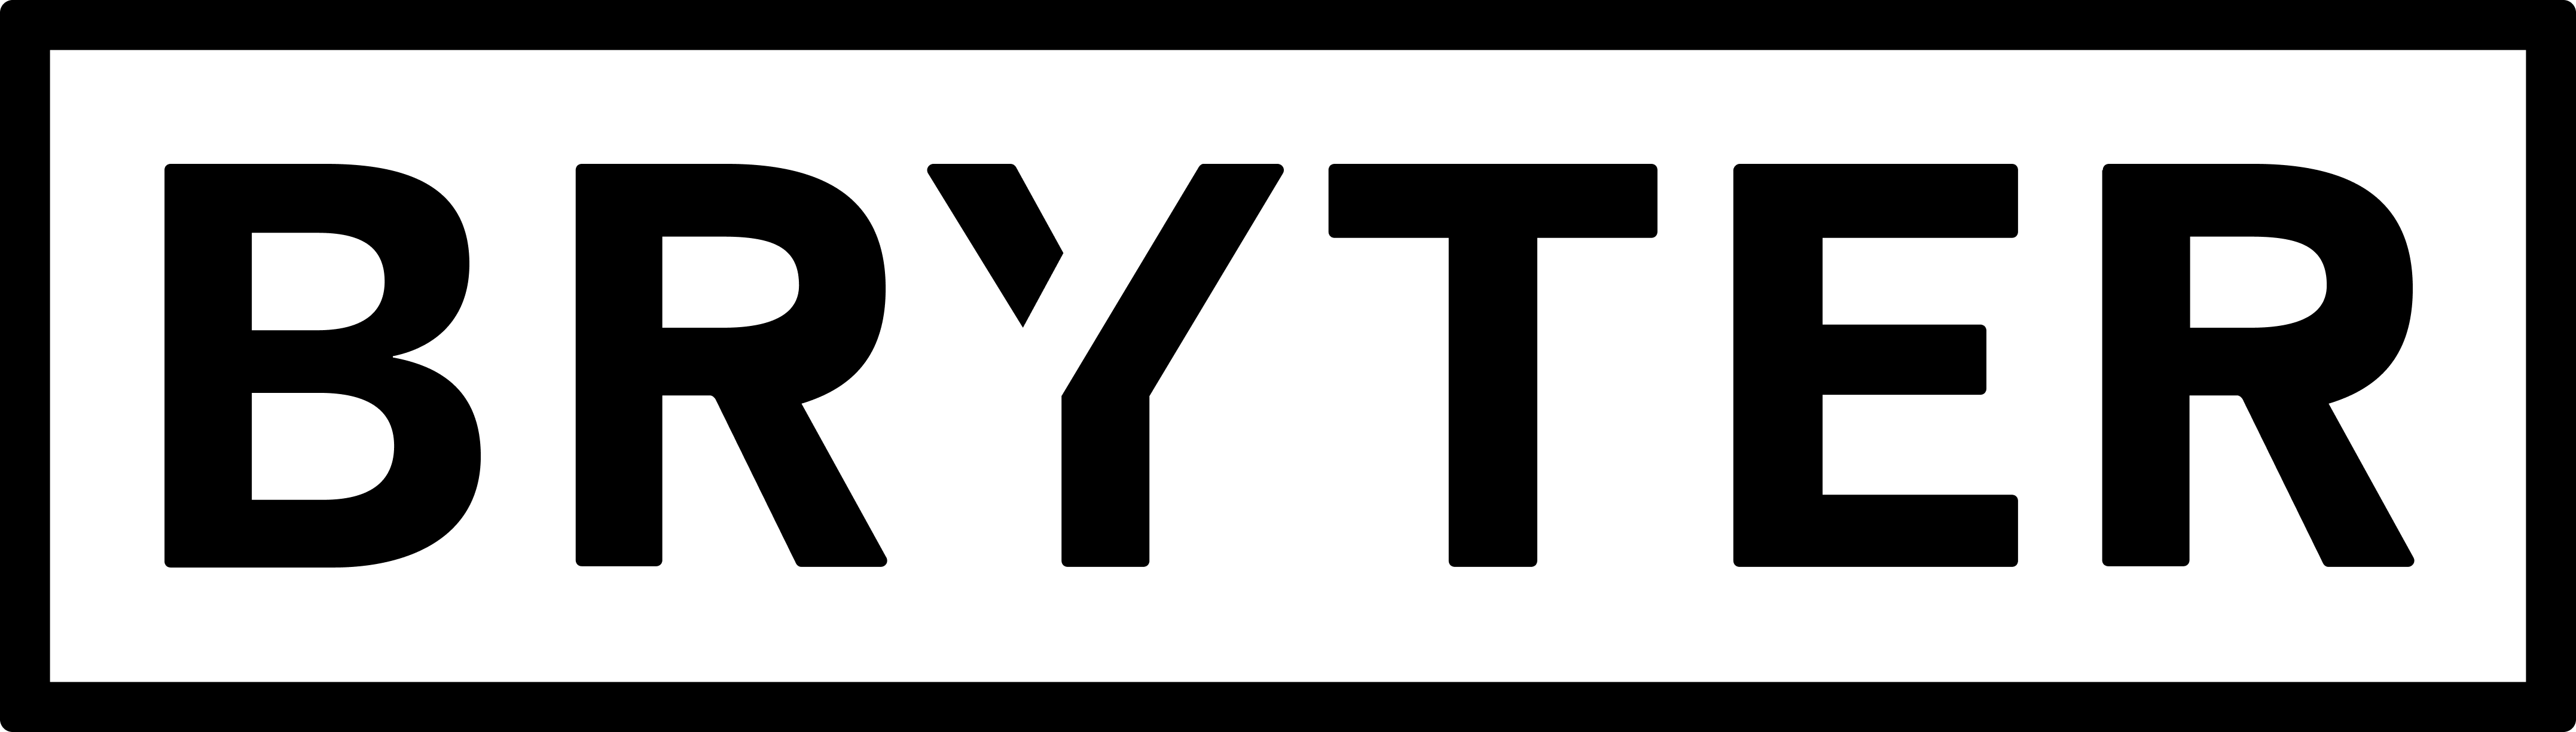 logo full black